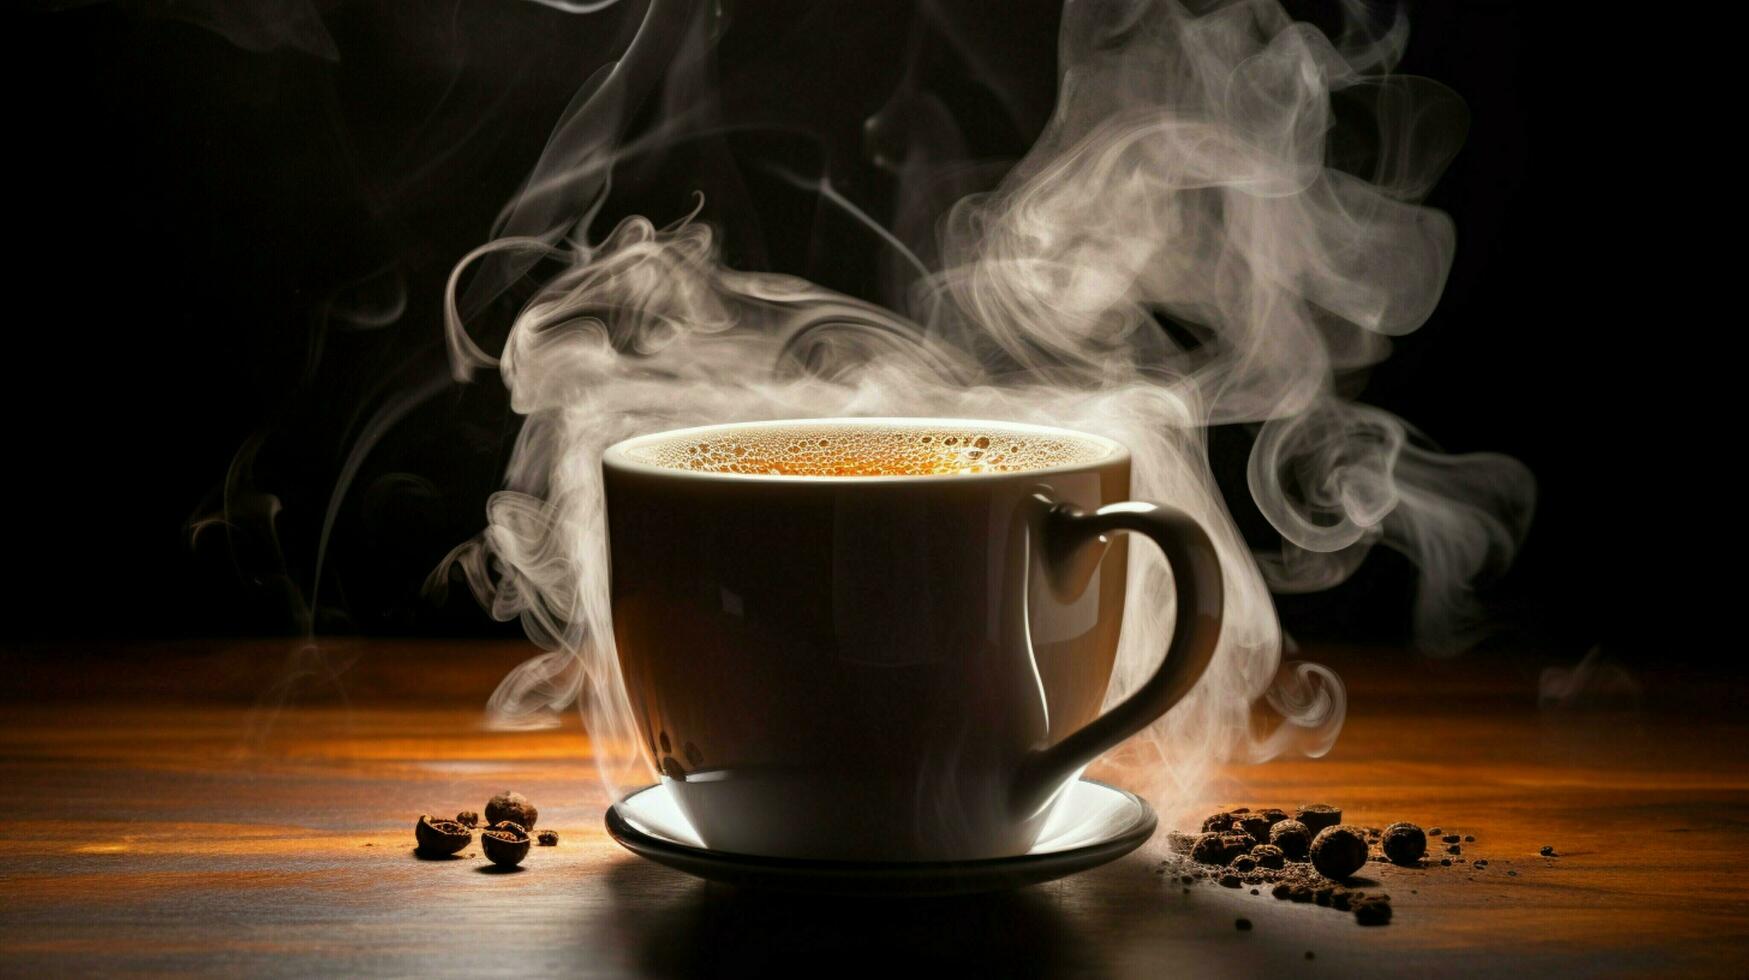 chaud vapeur en hausse de café dans une agresser photo